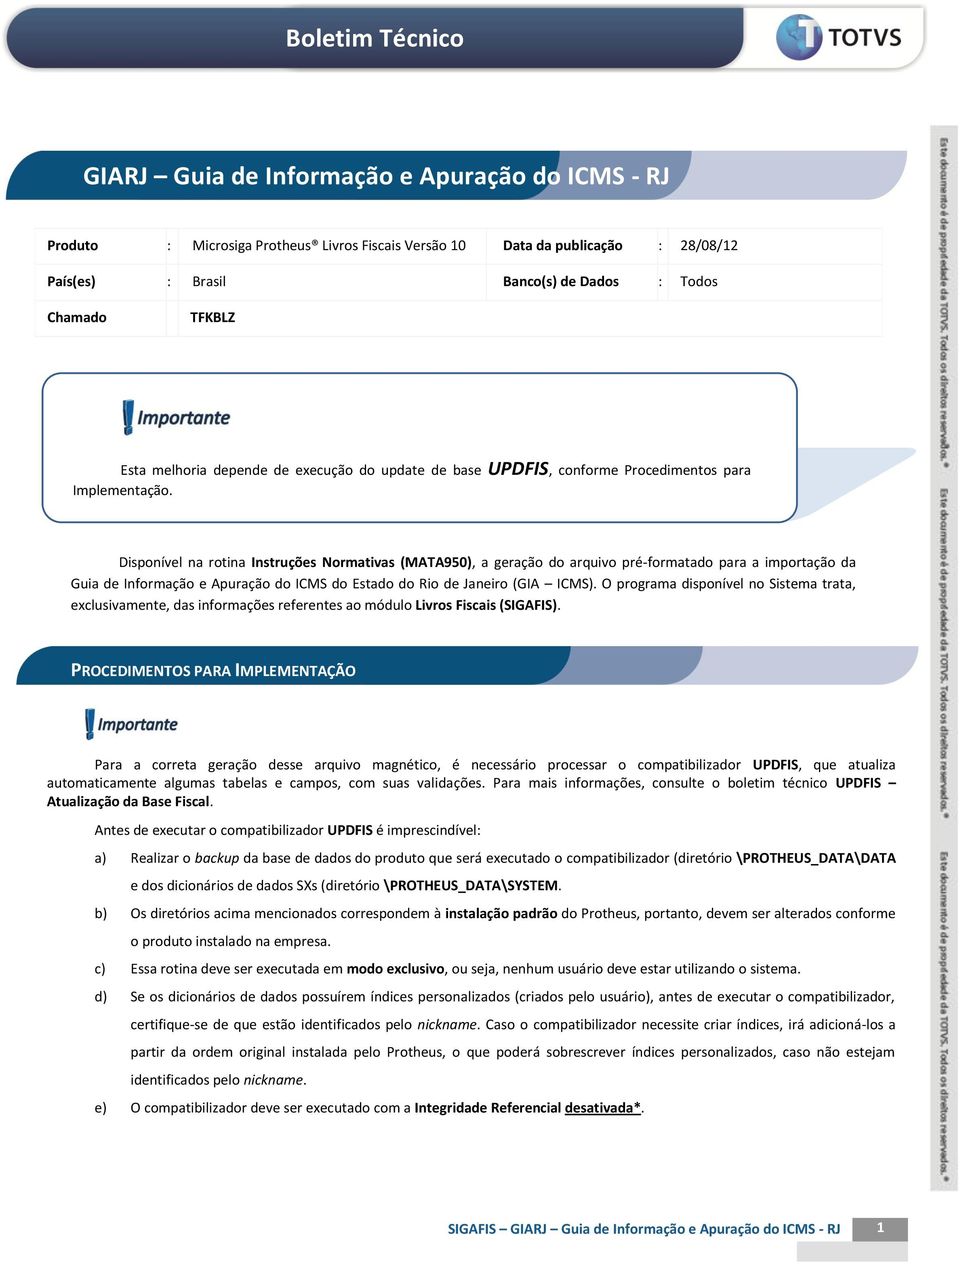 Disponível na rotina Instruções Normativas (MATA950), a geração do arquivo pré-formatado para a importação da Guia de Informação e Apuração do ICMS do Estado do Rio de Janeiro (GIA ICMS).